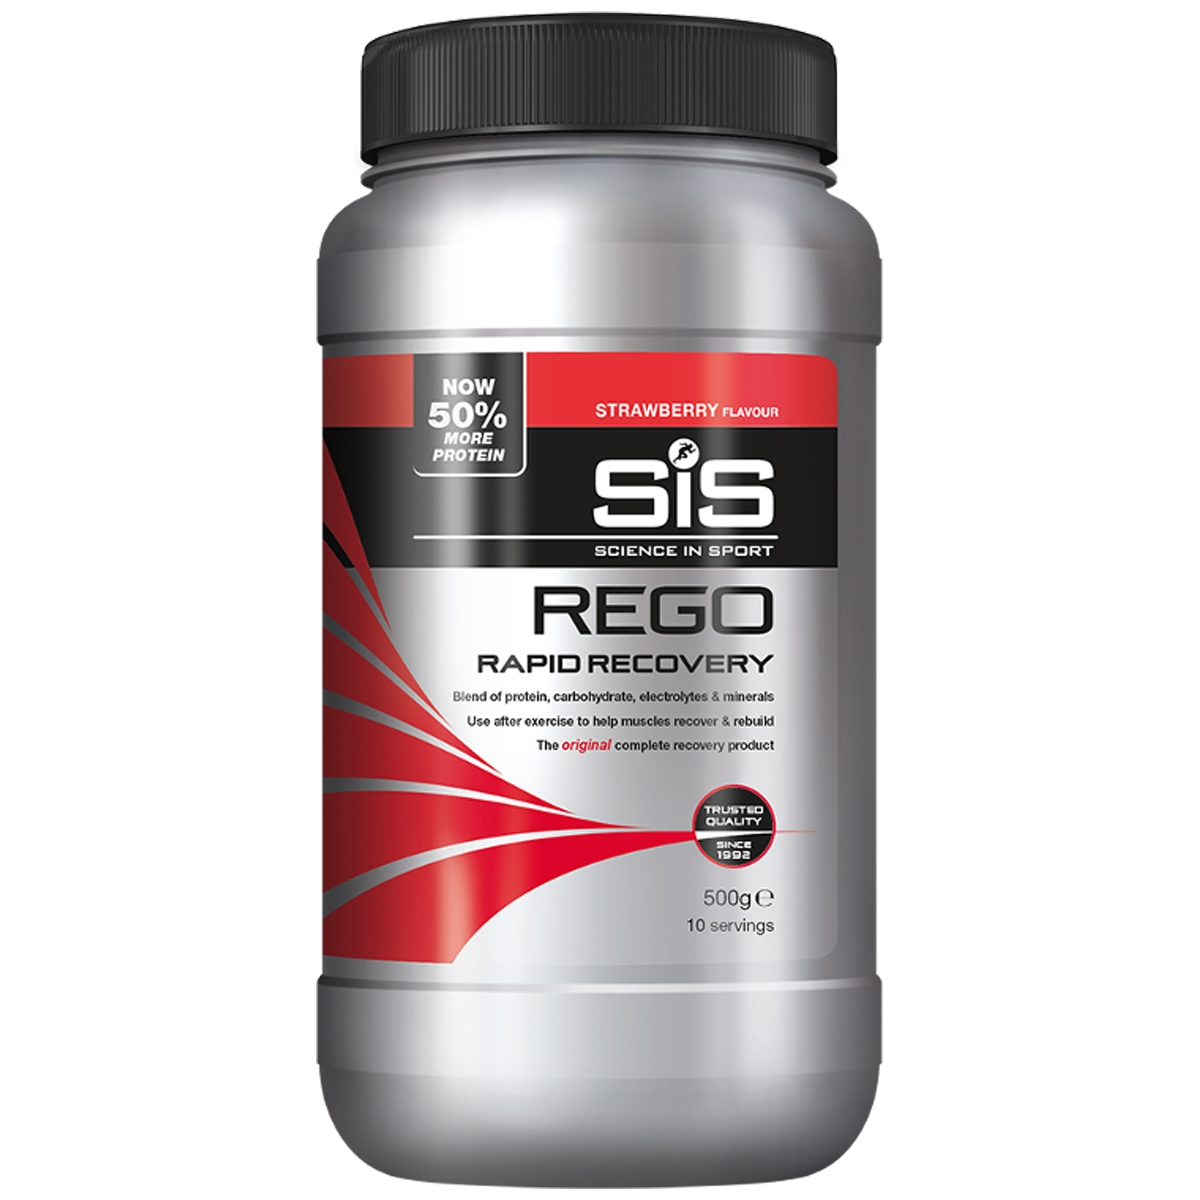 Rego Rapid Recovery Drink Erdbeergeschmack 500g